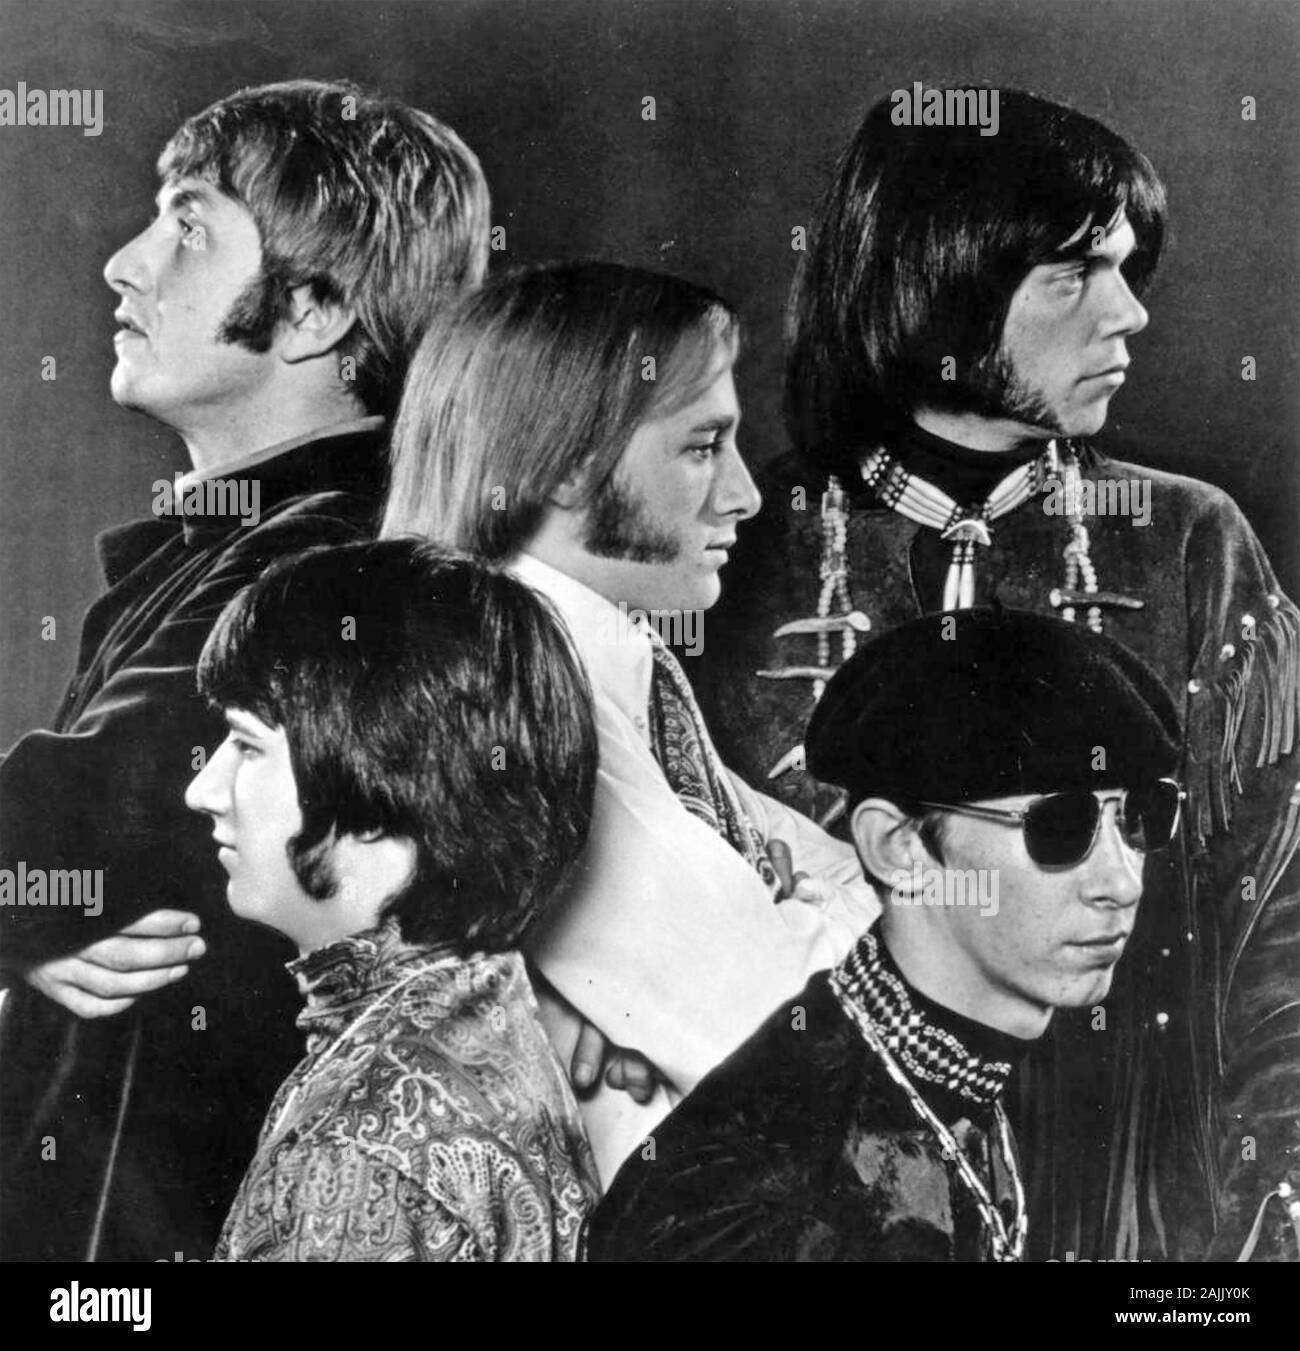 BUFFALO SPRINGFIELD foto promozionale di rock americano gruppo circa 1966 Foto Stock